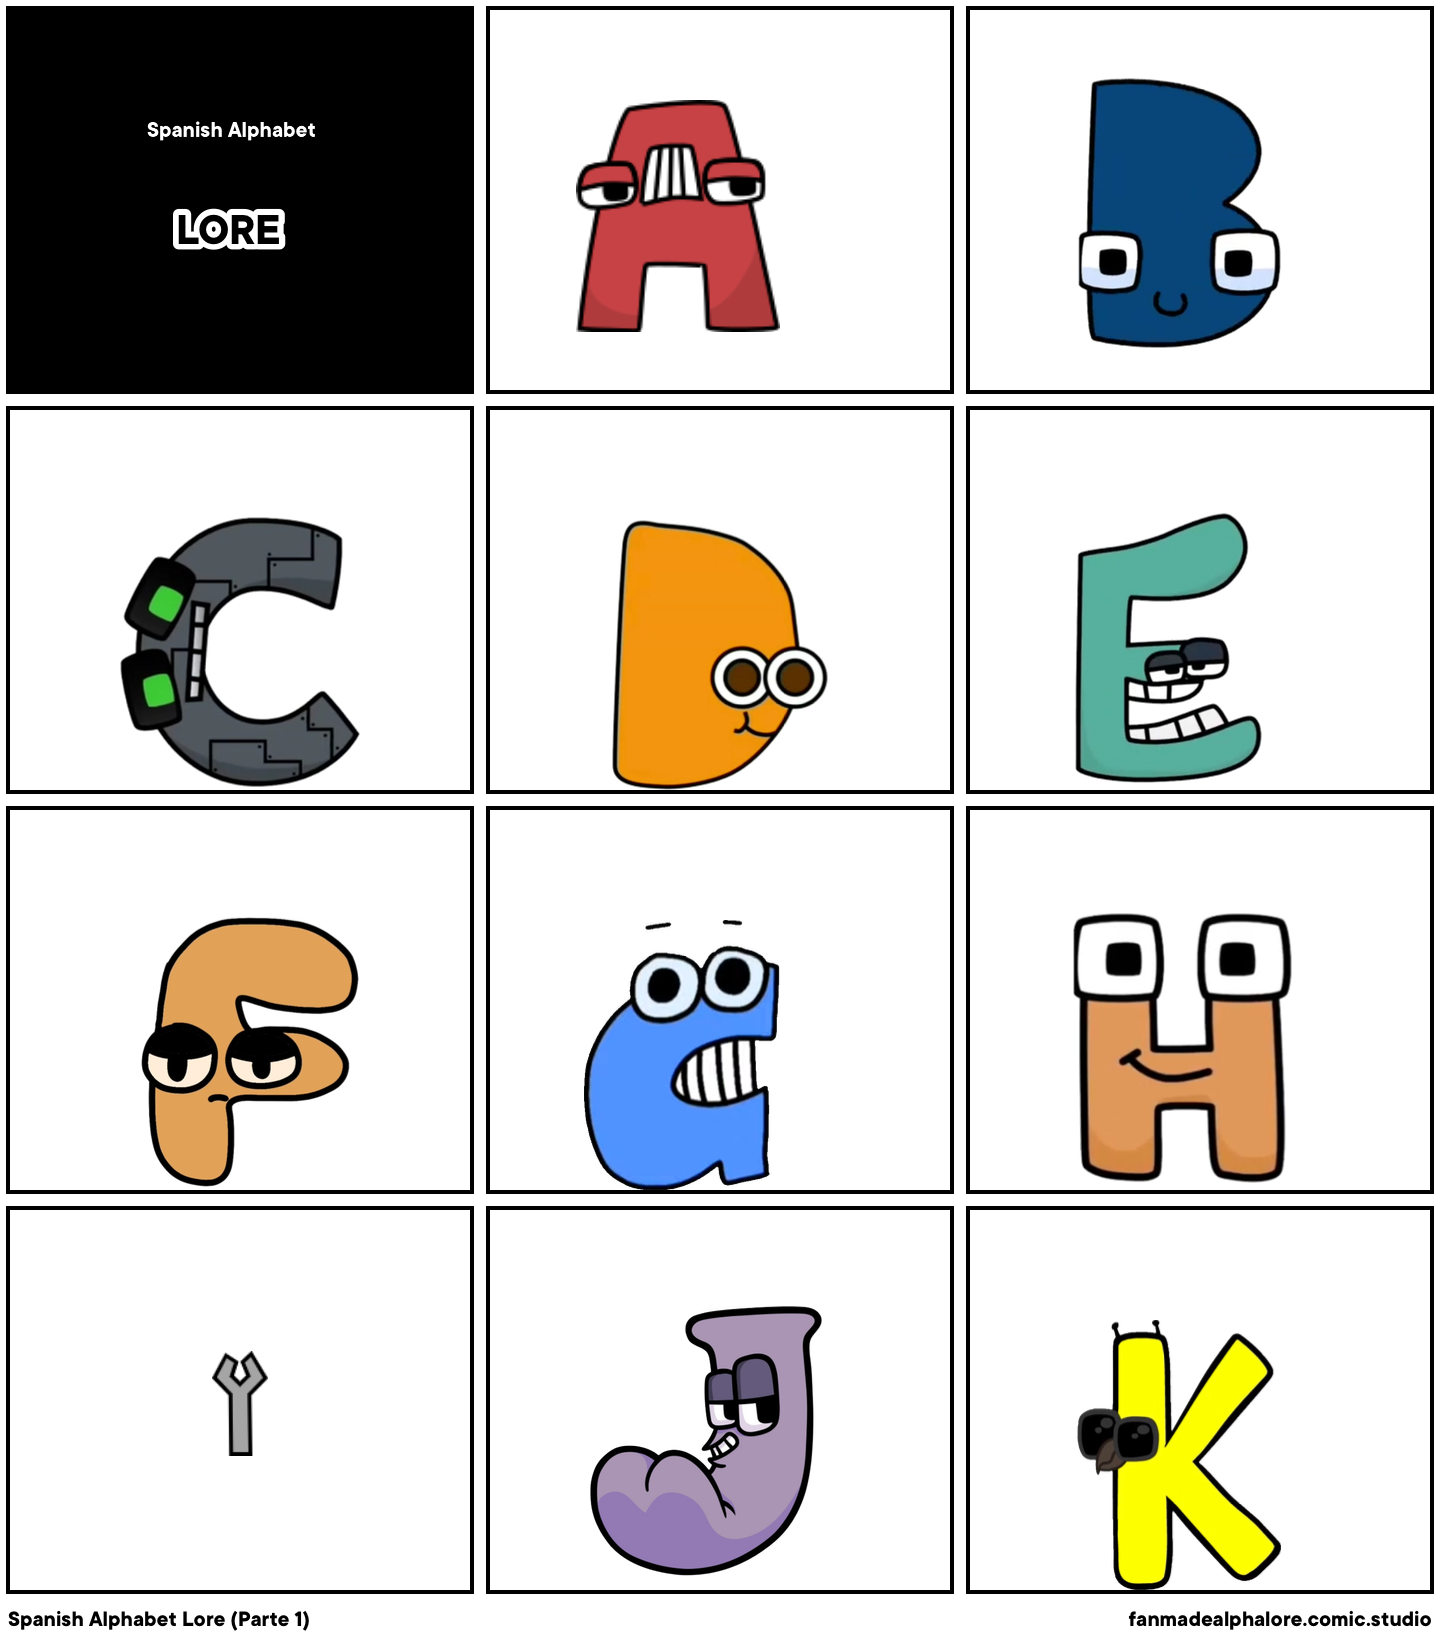 Lowercase alphabet lore part 1 friends! - Comic Studio